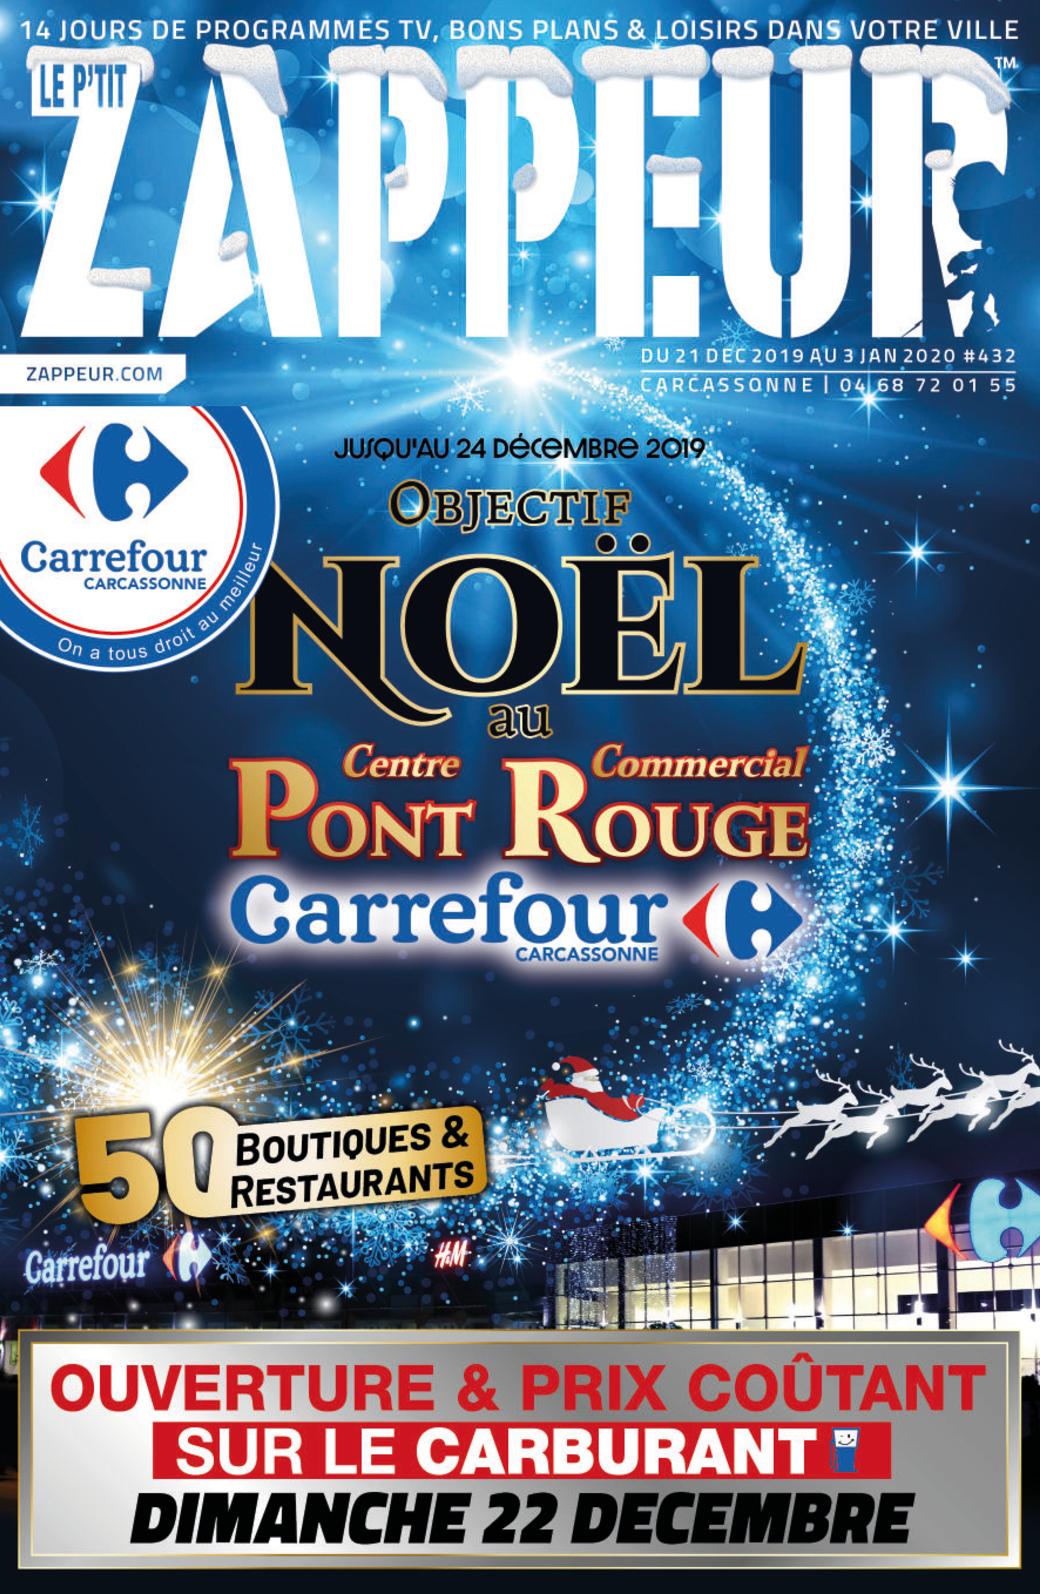 Table Basse Carrefour Luxe Calaméo Le P Tit Zappeur Carcassonne 432